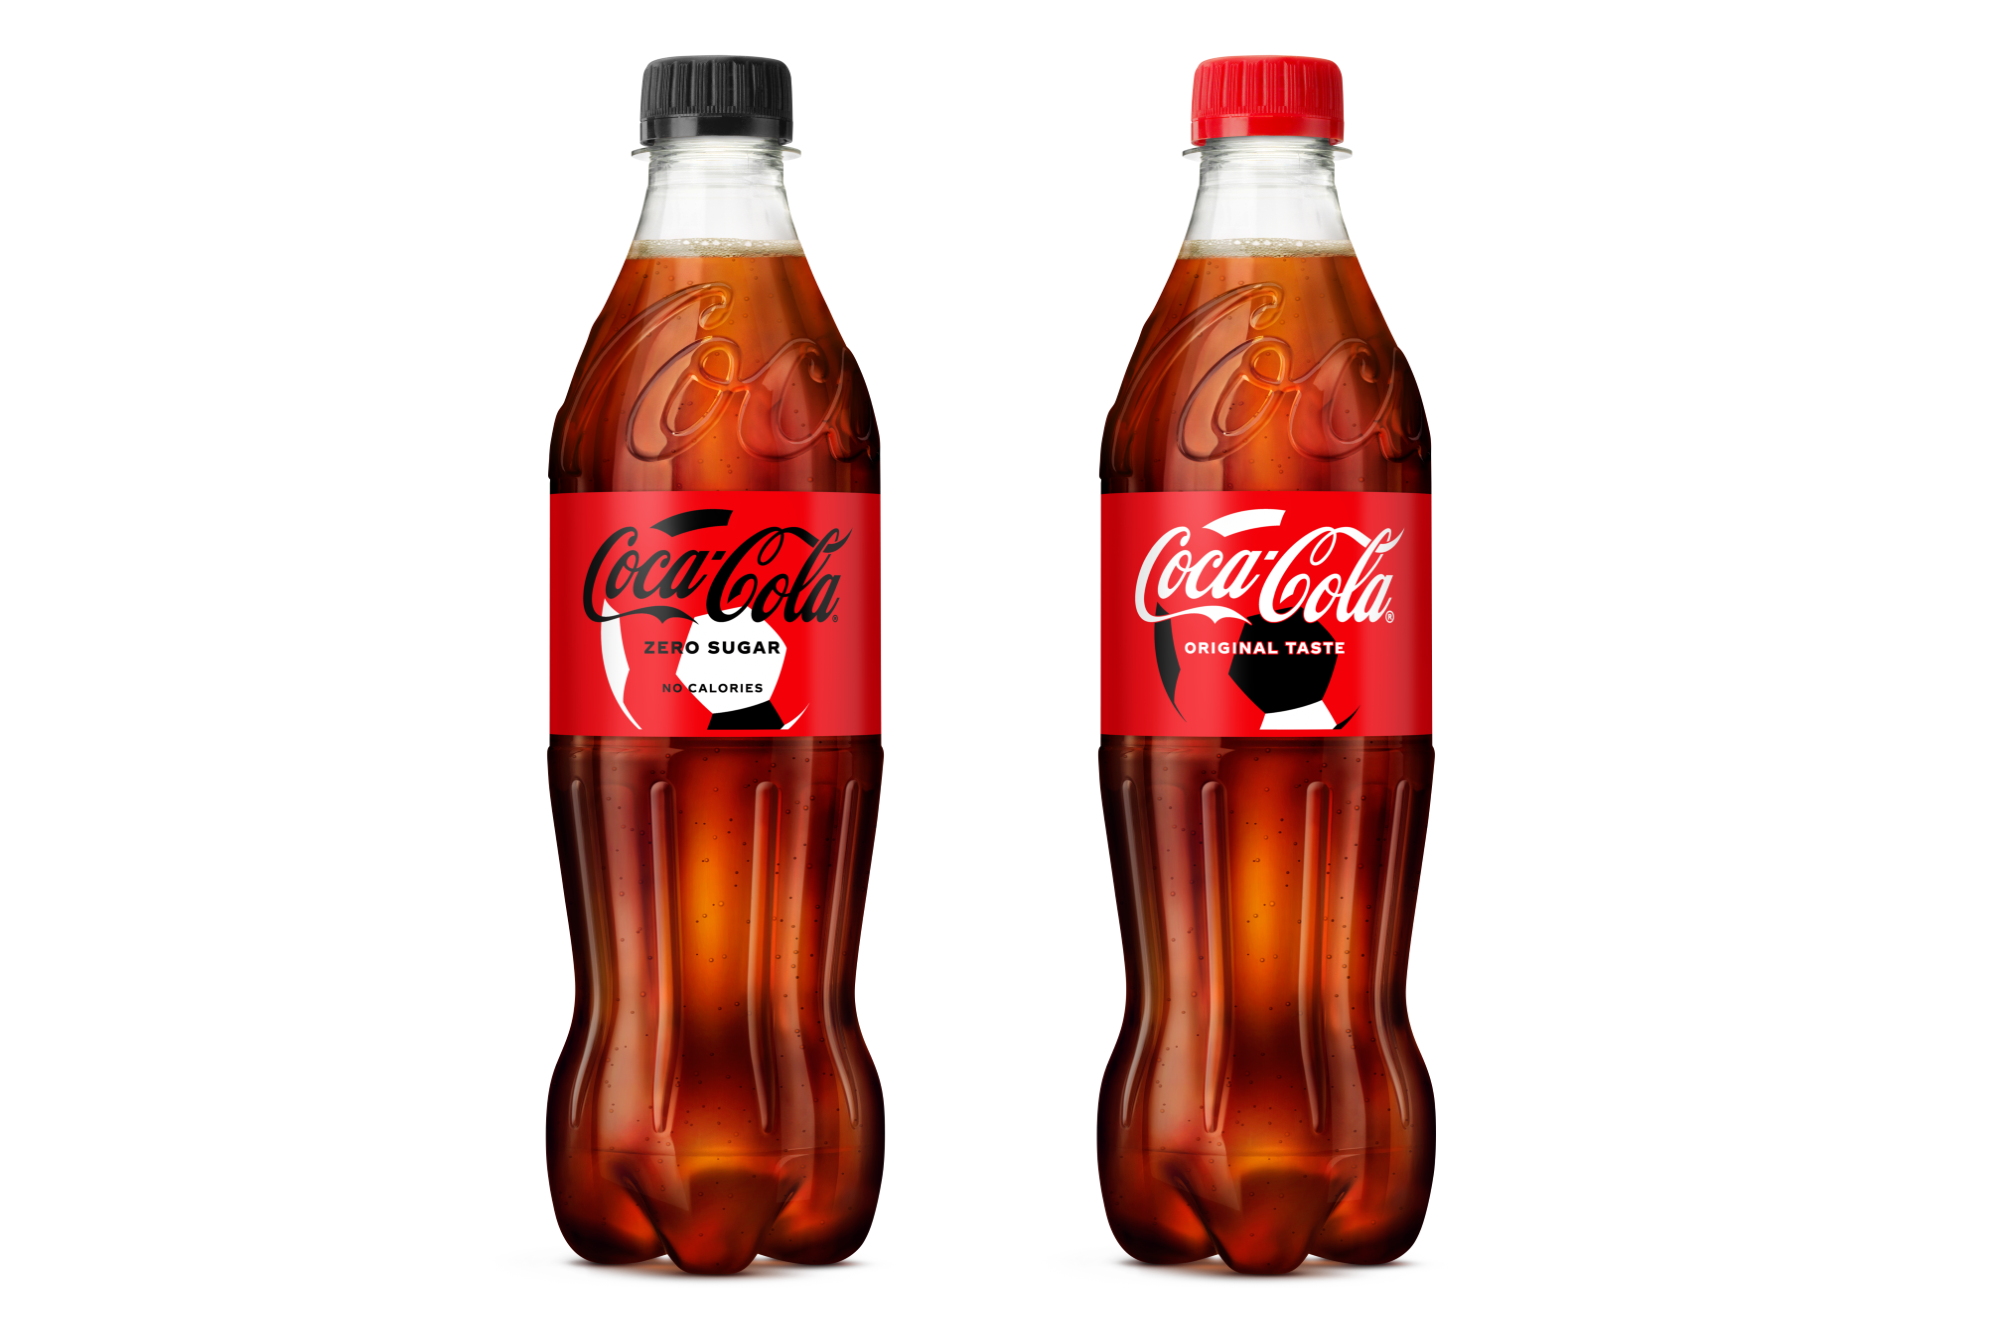 coca cola cup png